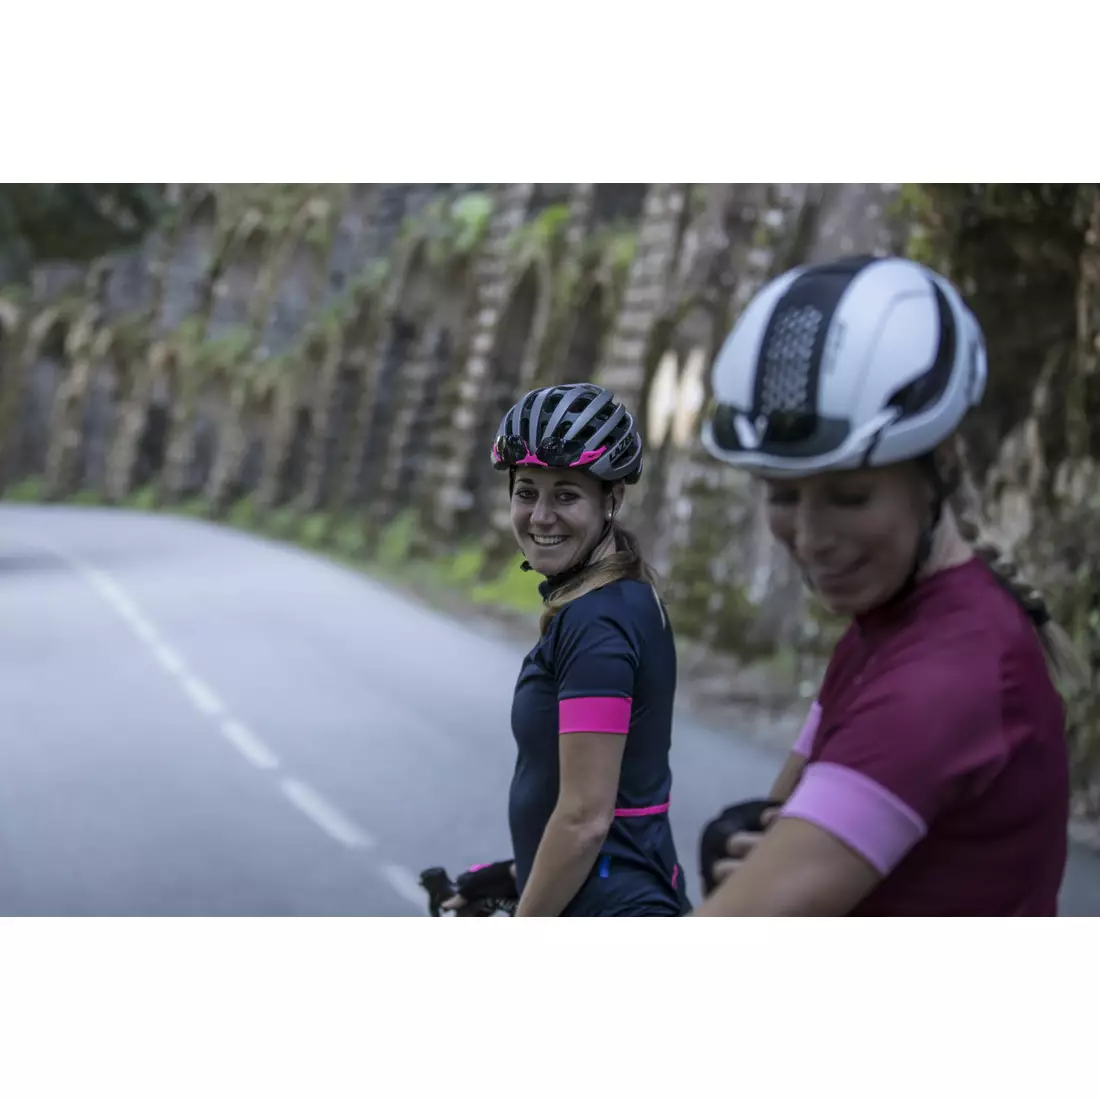 ROGELLI MODESTA tricou de ciclism pentru femei, albastru marin și roz